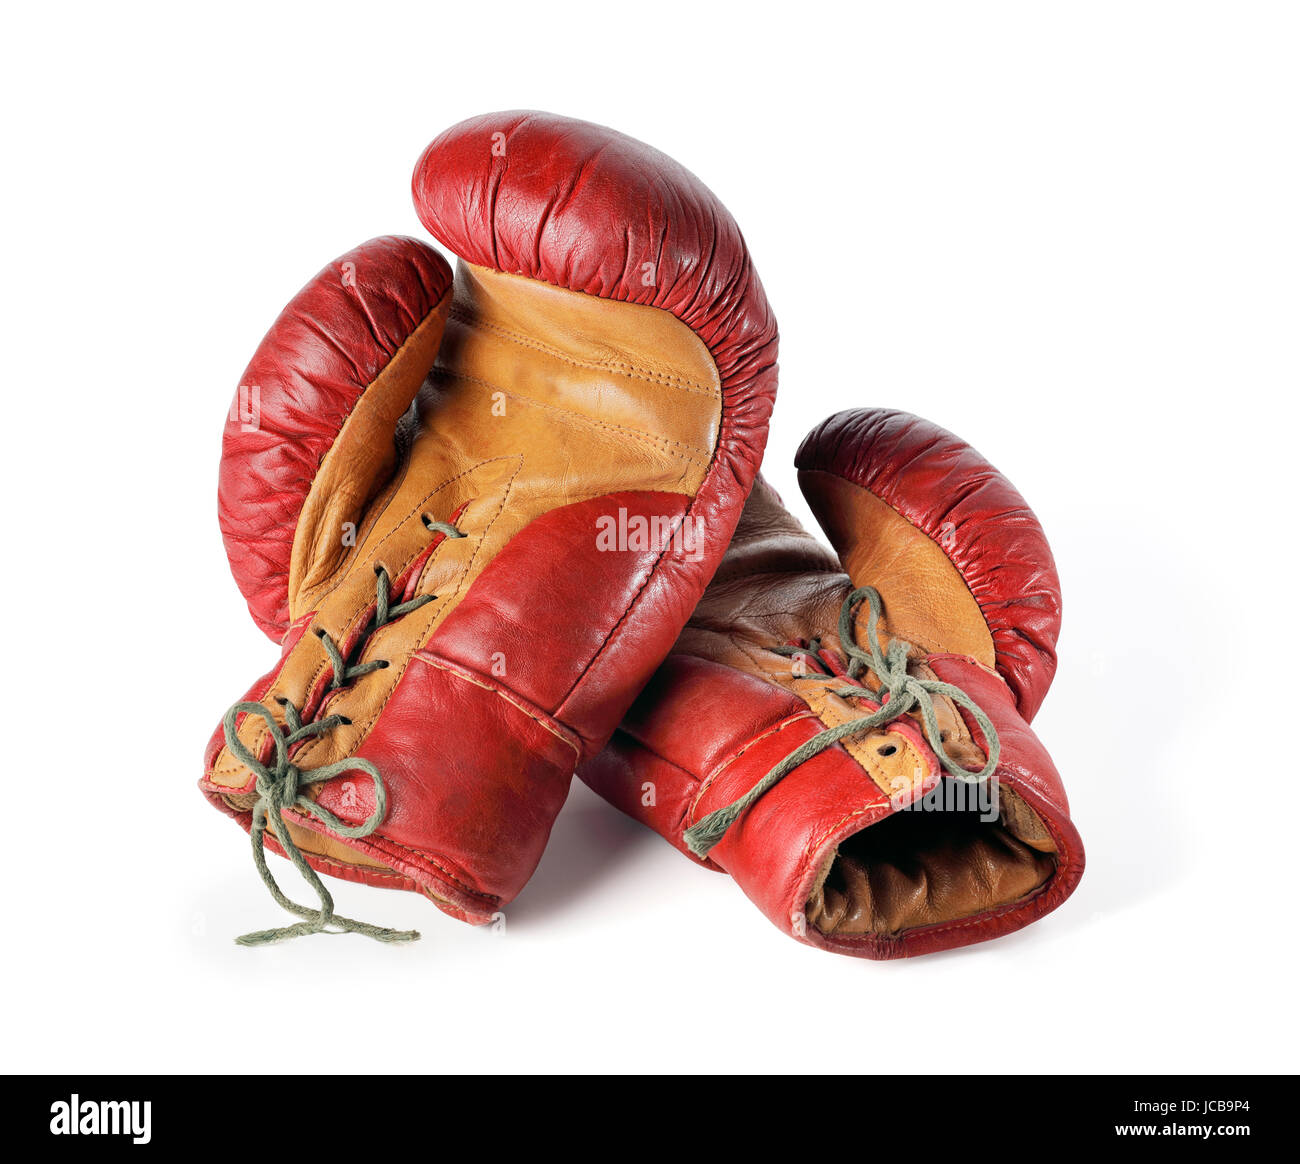 Antiguos guantes de boxeo de cuero rojo aislado en blanco. Foto de stock